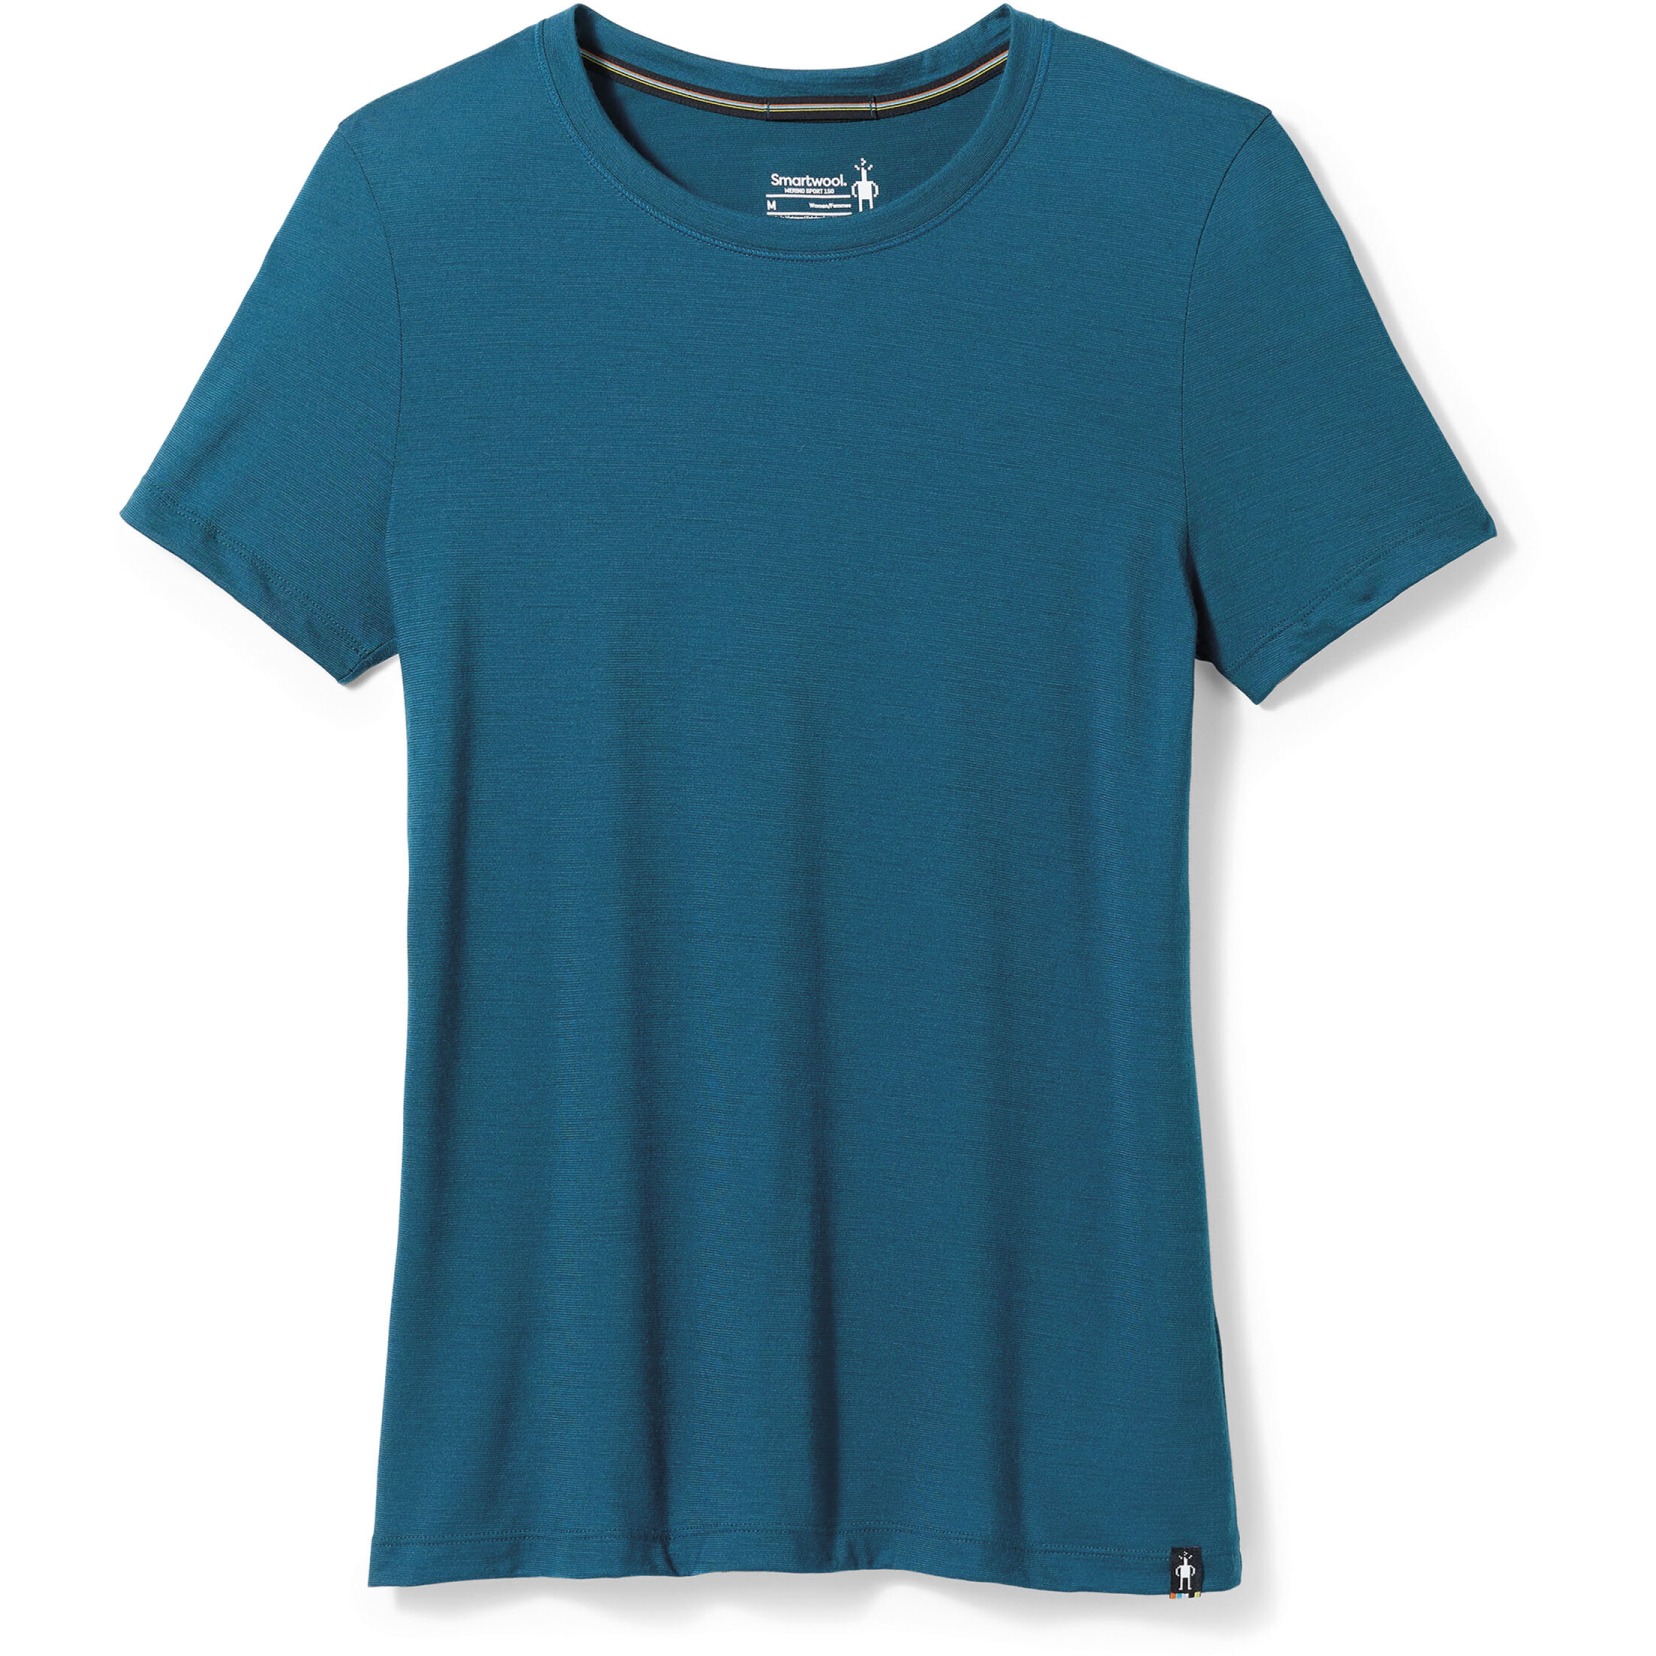 Produktbild von SmartWool Merino Sport 150 Slim Fit Damen T-Shirt - G74 twilight blue